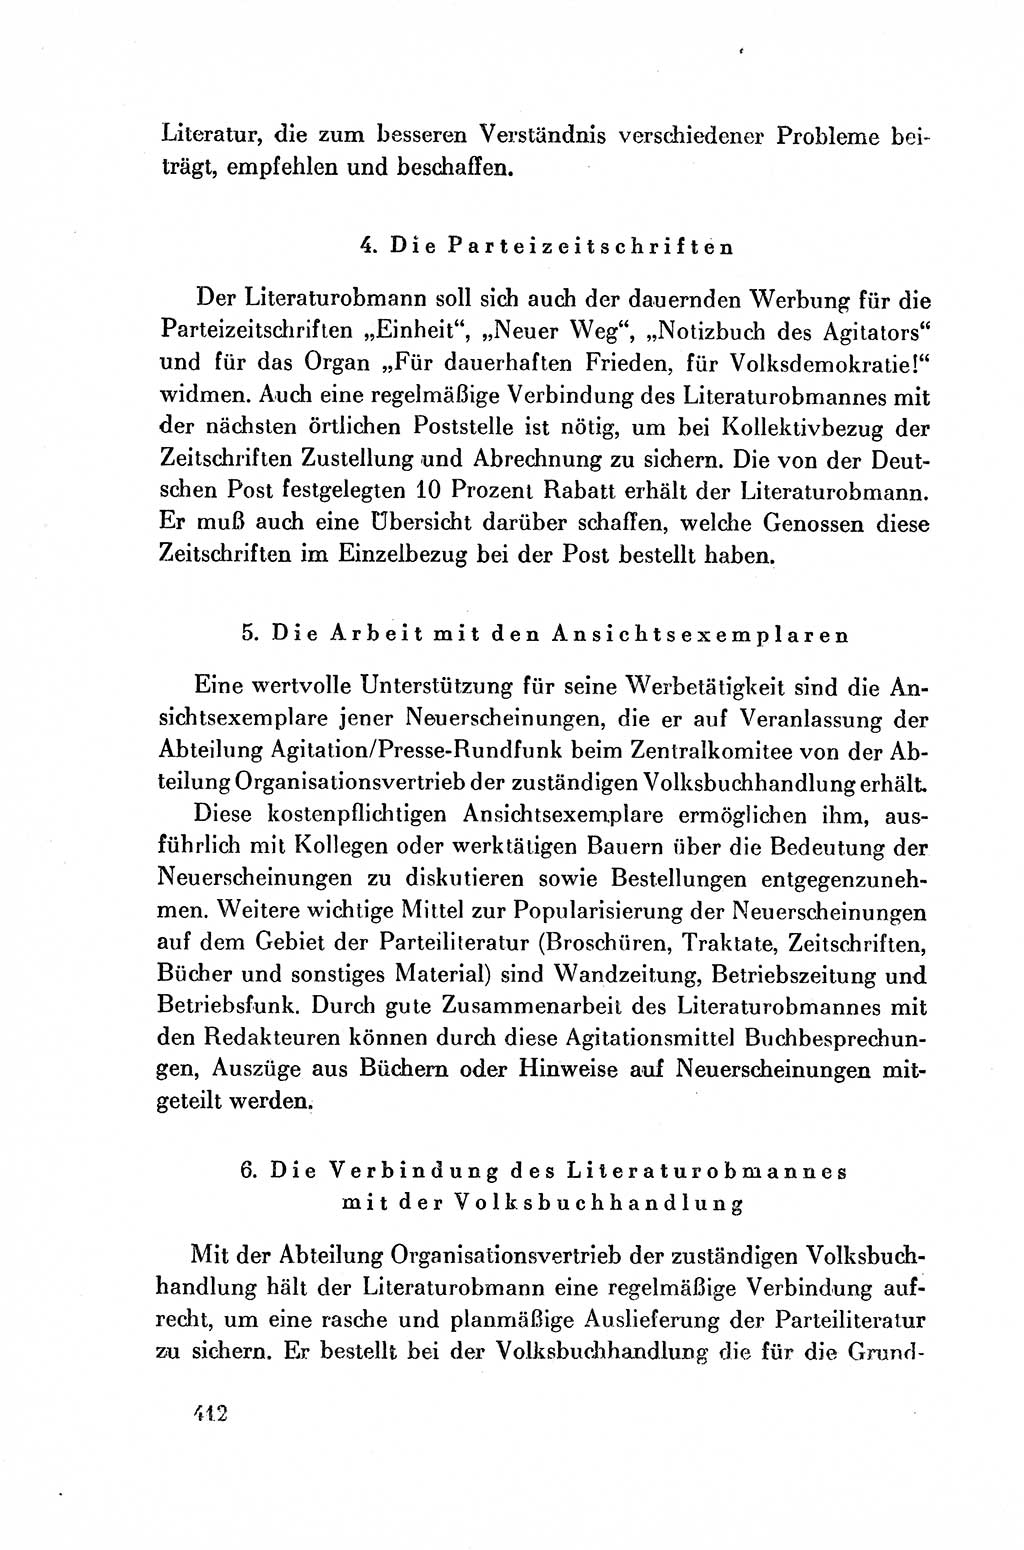 Dokumente der Sozialistischen Einheitspartei Deutschlands (SED) [Deutsche Demokratische Republik (DDR)] 1954-1955, Seite 412 (Dok. SED DDR 1954-1955, S. 412)